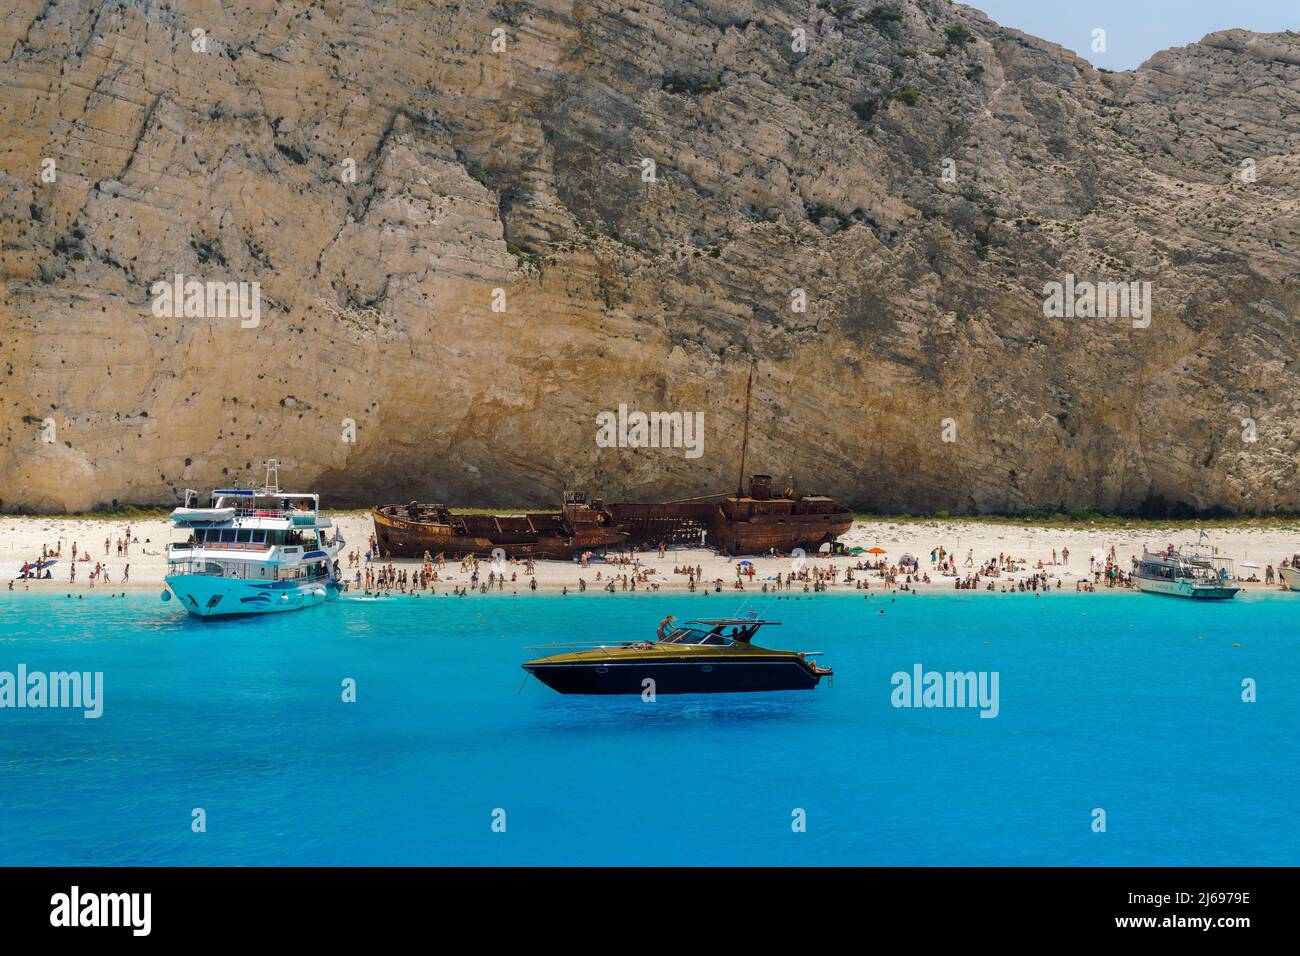 Naufragio sulla spiaggia di Navagio, una famosa spiaggia con acque cristalline, barche da diporto e bagnanti ormeggiati, Zante, Isole IONIE, Isole Greche Foto Stock